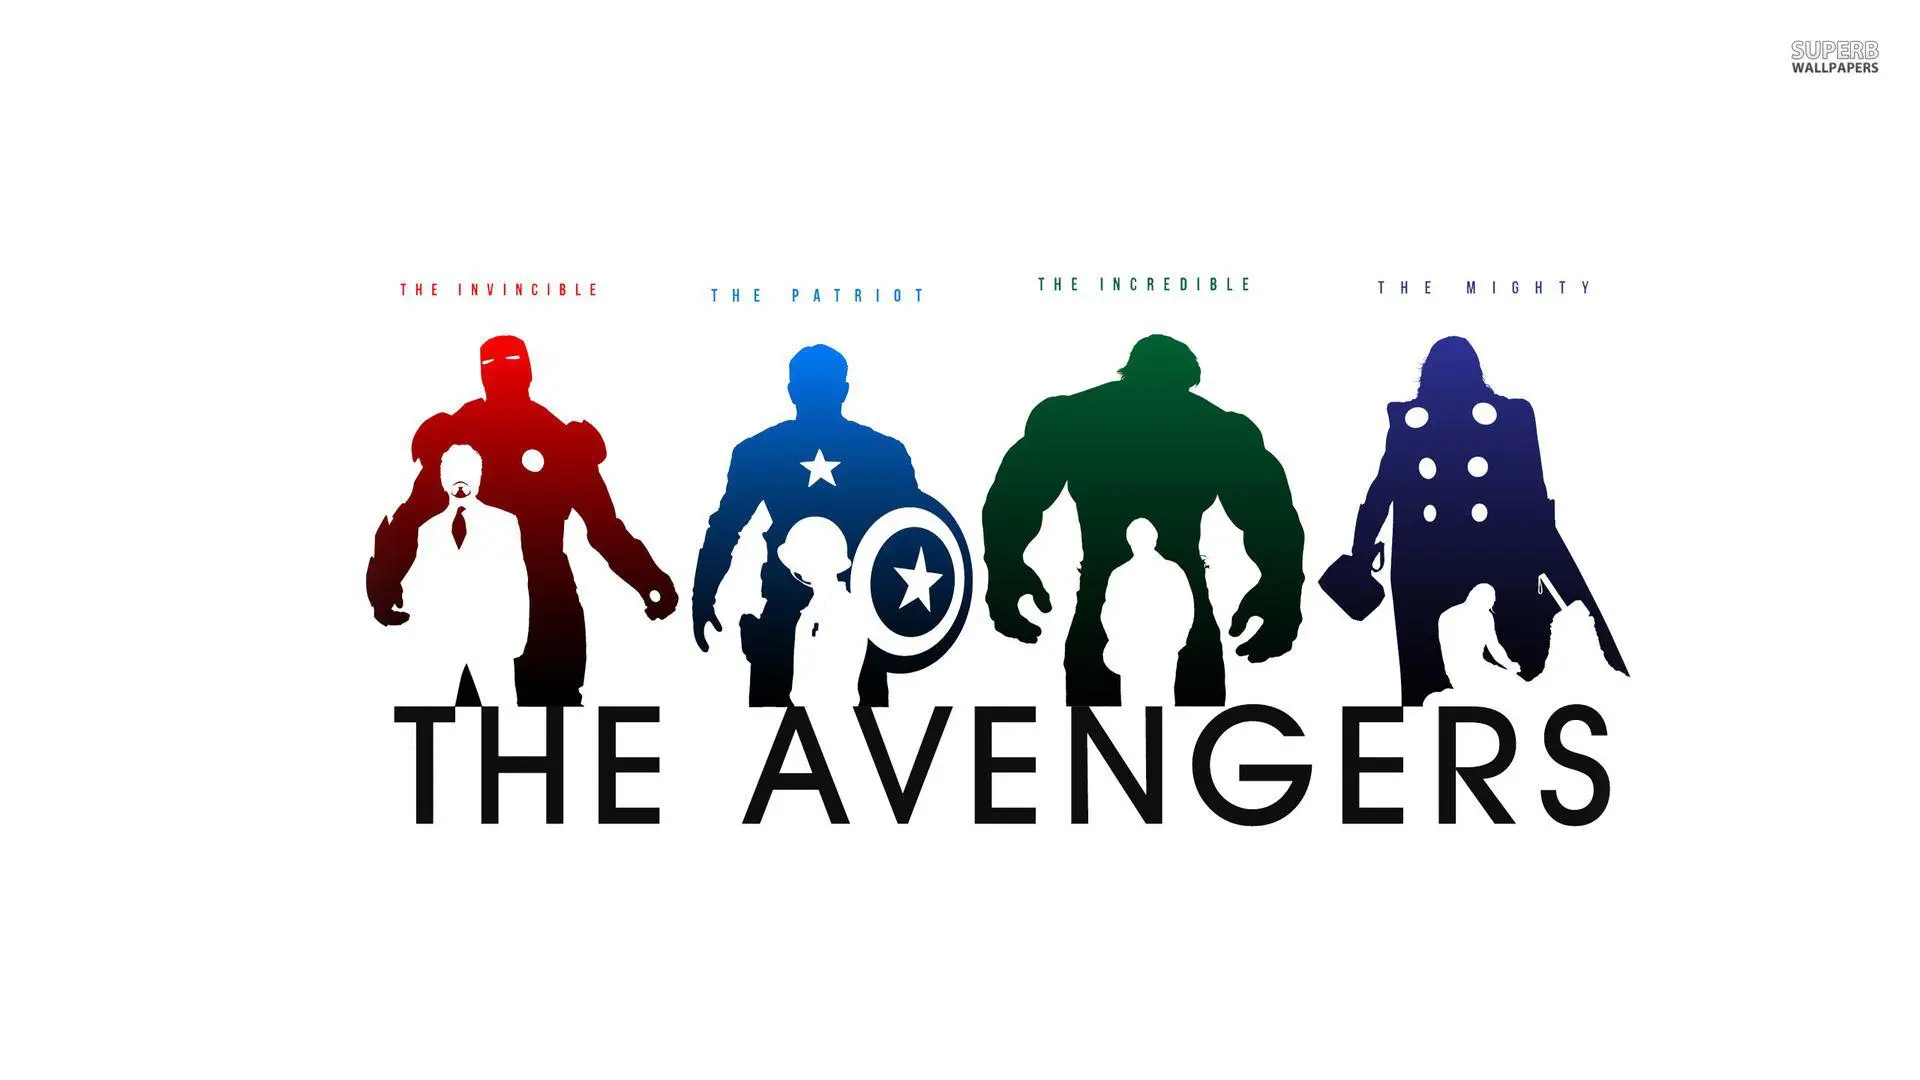 The Men's Avenger's Group